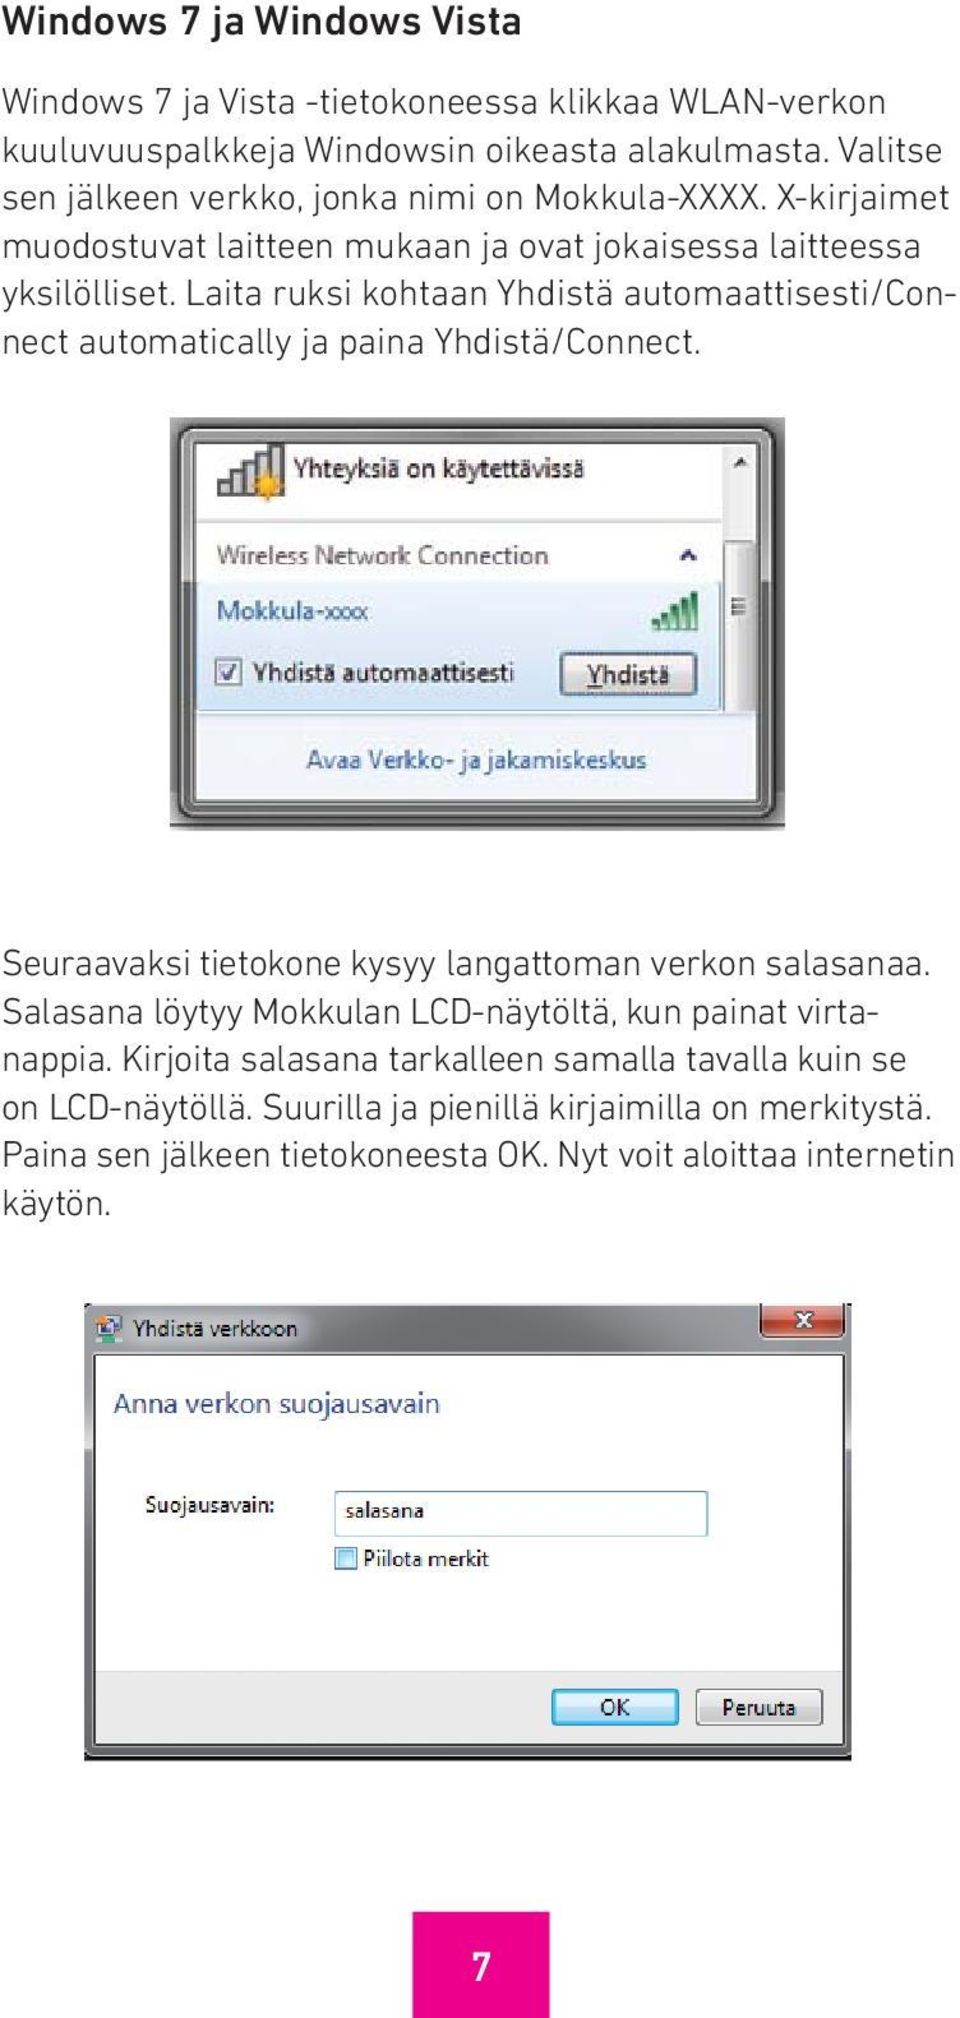 Laita ruksi kohtaan Yhdistä automaattisesti/connect automatically ja paina Yhdistä/Connect. Seuraavaksi tietokone kysyy langattoman verkon salasanaa.